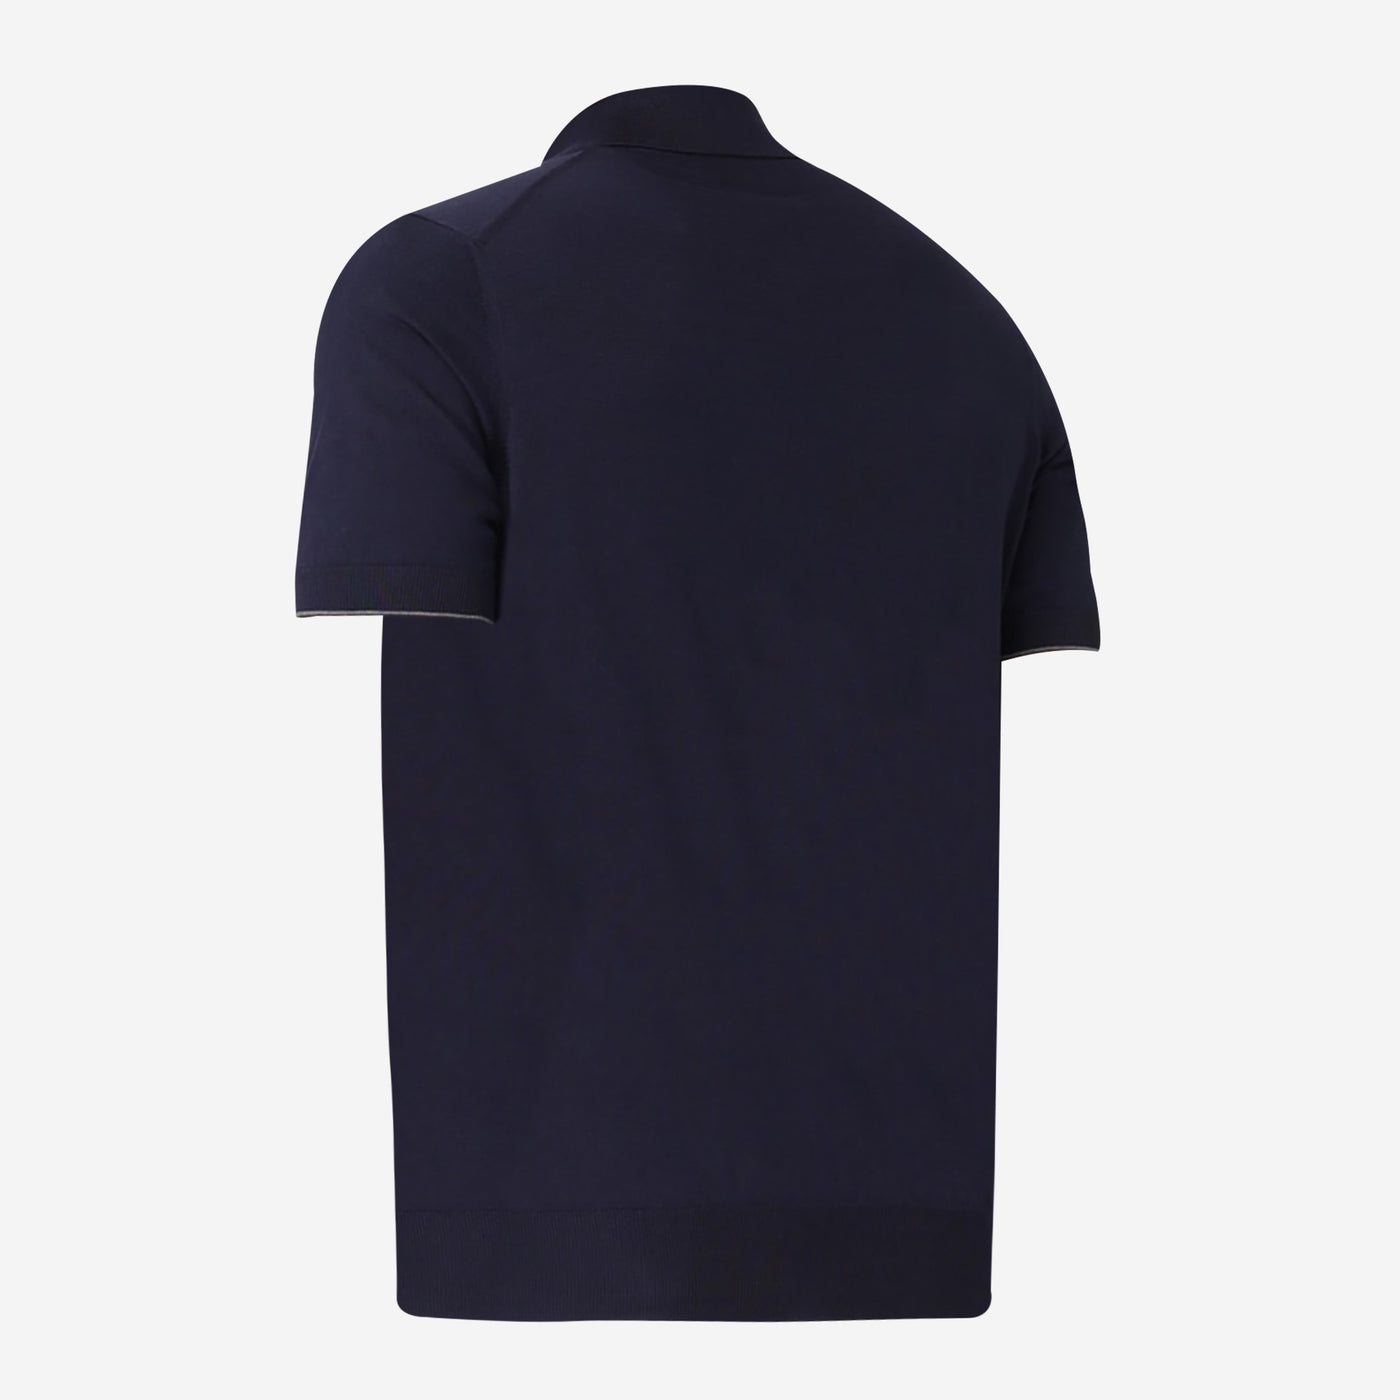 Brunello Cucinelli Knit Polo Shirt